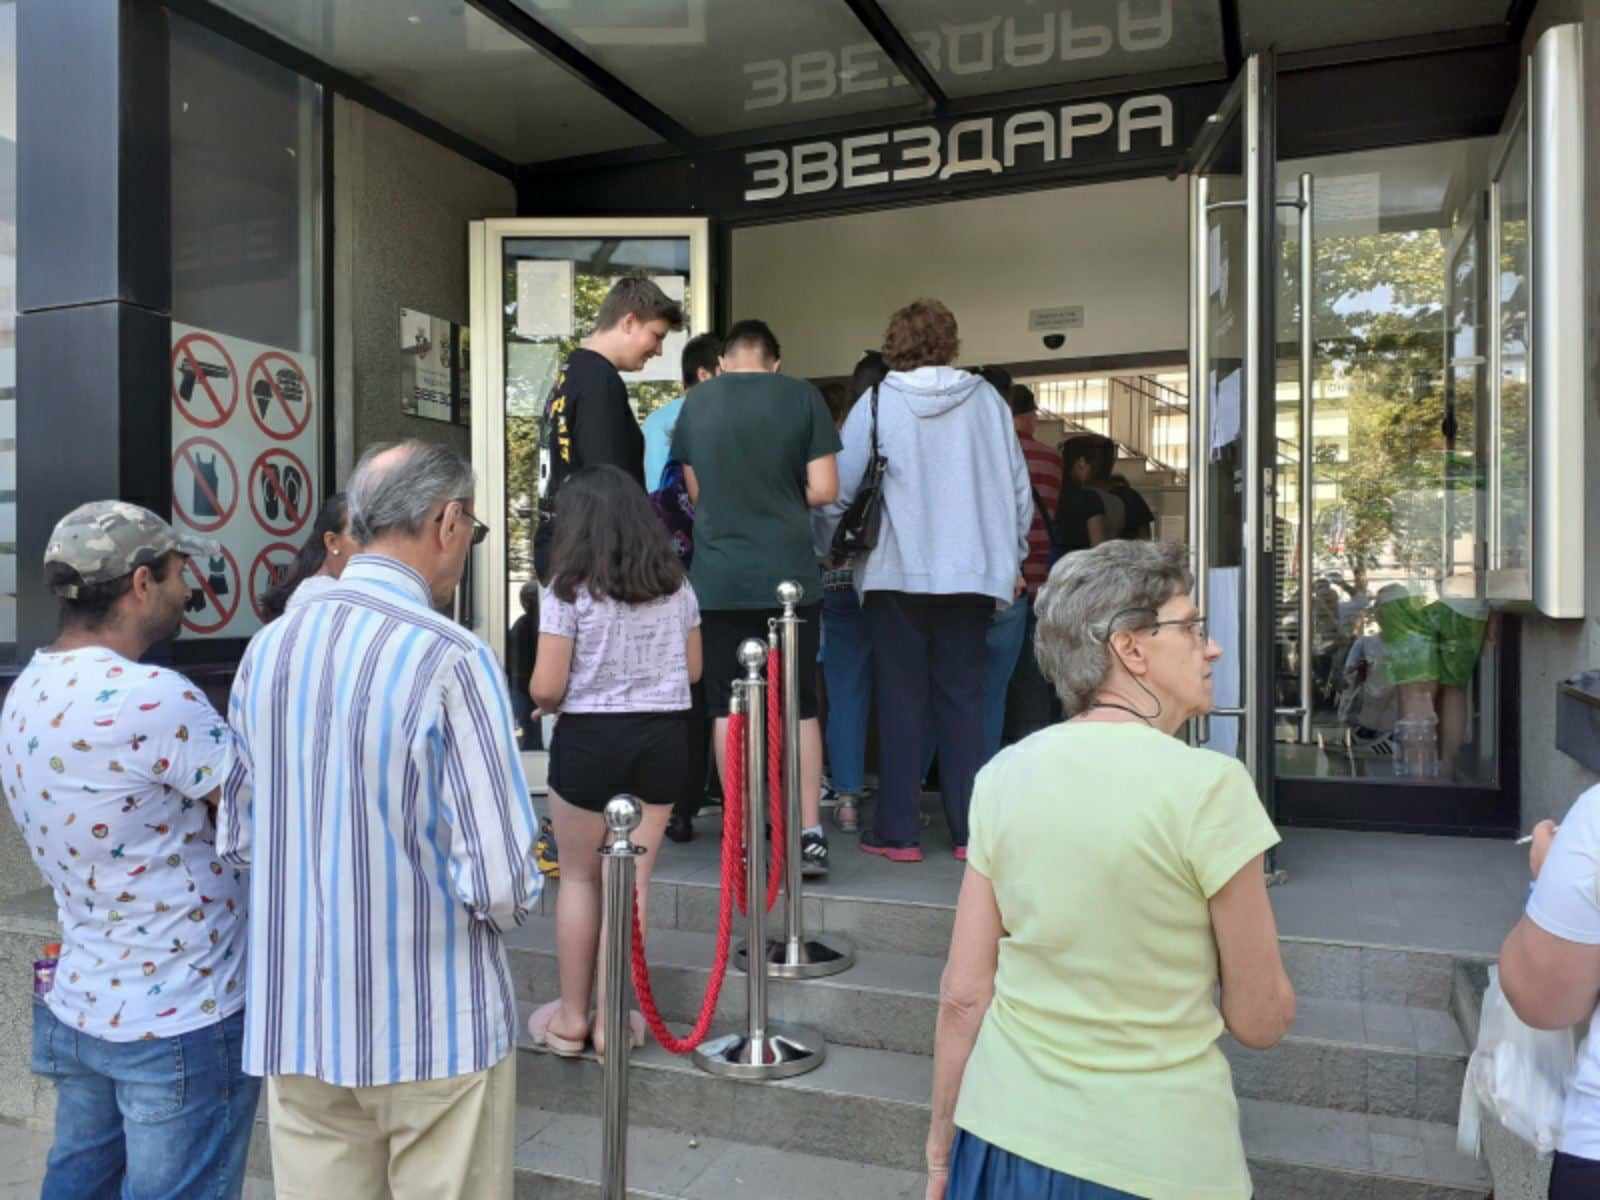 "Jedan šalter za sve, a sistem pada": Na besplatne kartice za bazene Beograđani čekaju i po tri sata (FOTO) 3